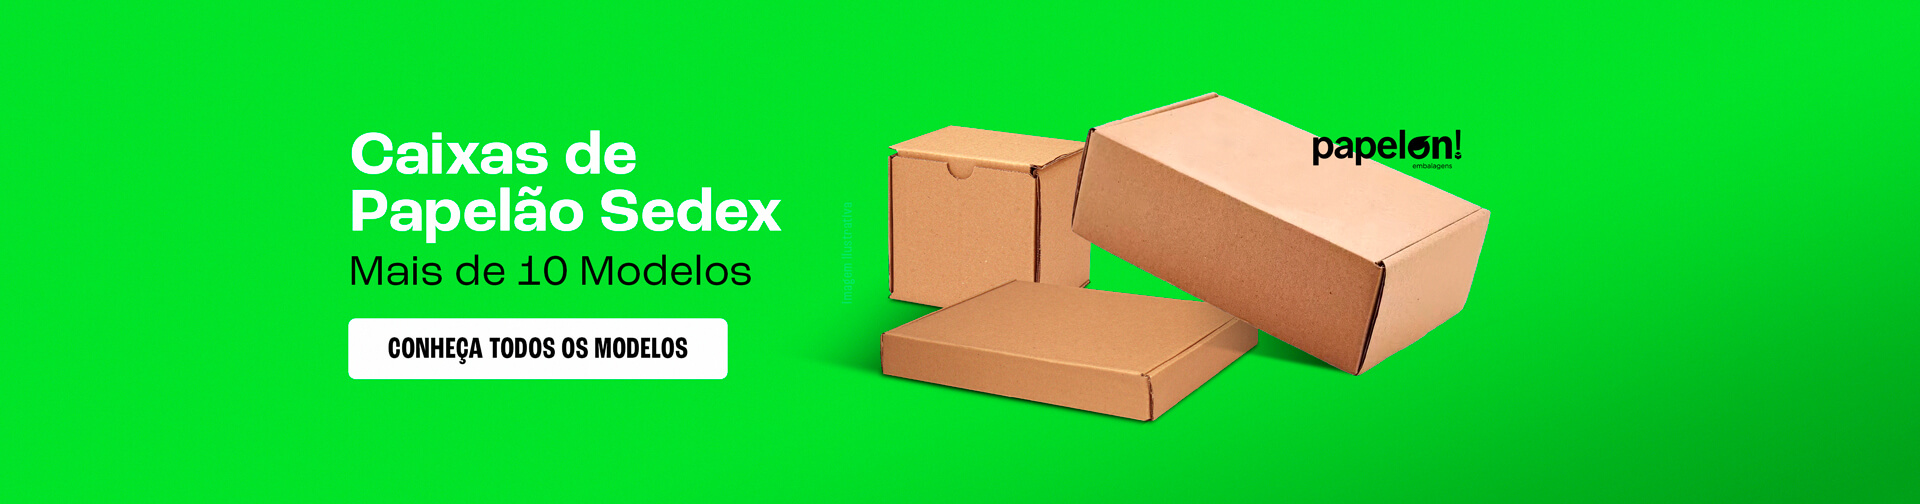 Caixas de Papelão Sedex com diversos tamanhos